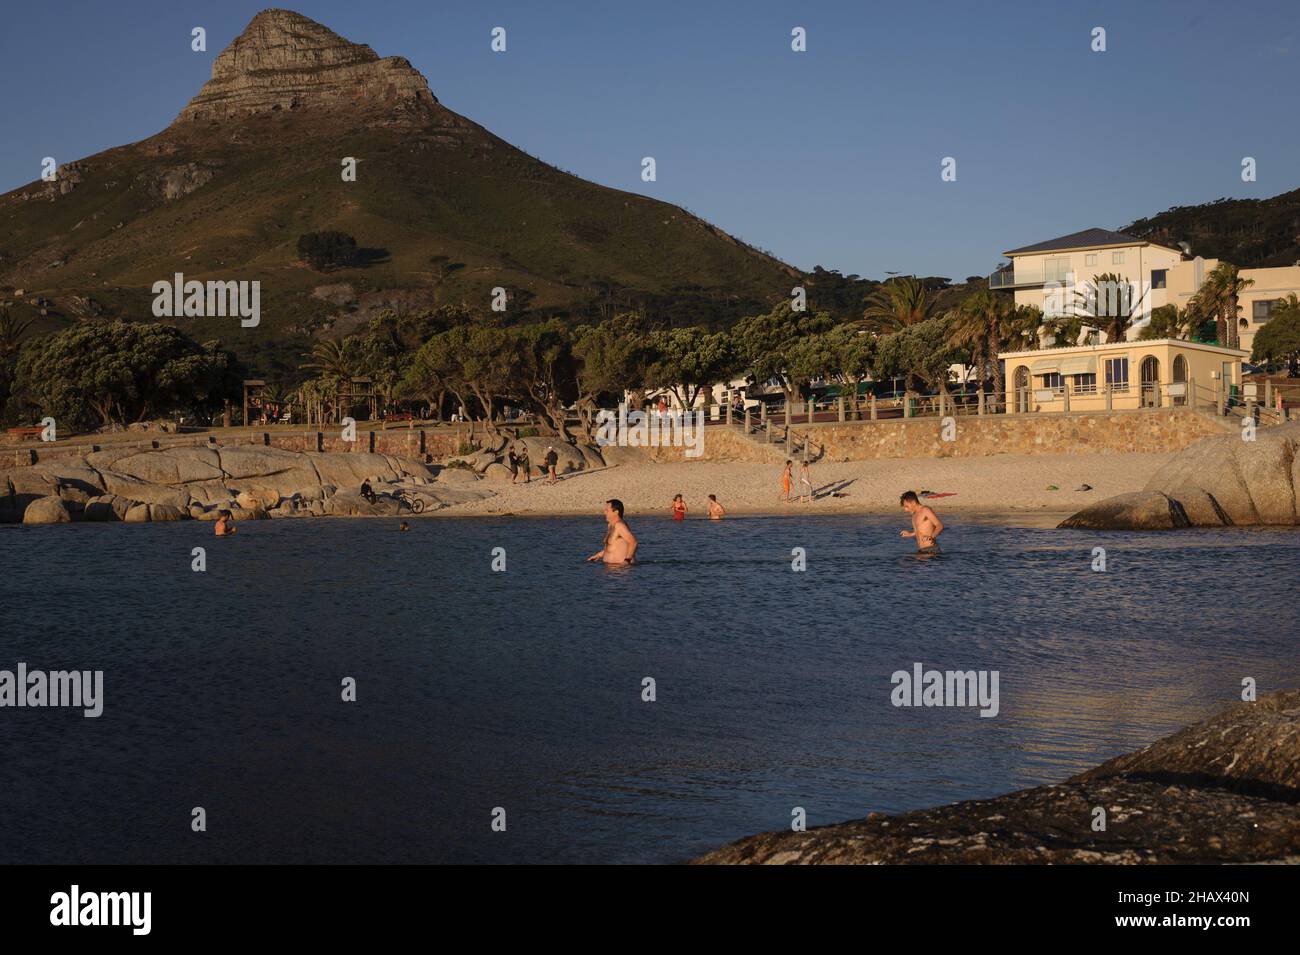 La piscina di marea nel sobborgo costiero di Camp's Bay di Città del Capo attira sia la gente del posto che i turisti per le sue acque calme e i benefici di una nuotata in acqua fredda Foto Stock